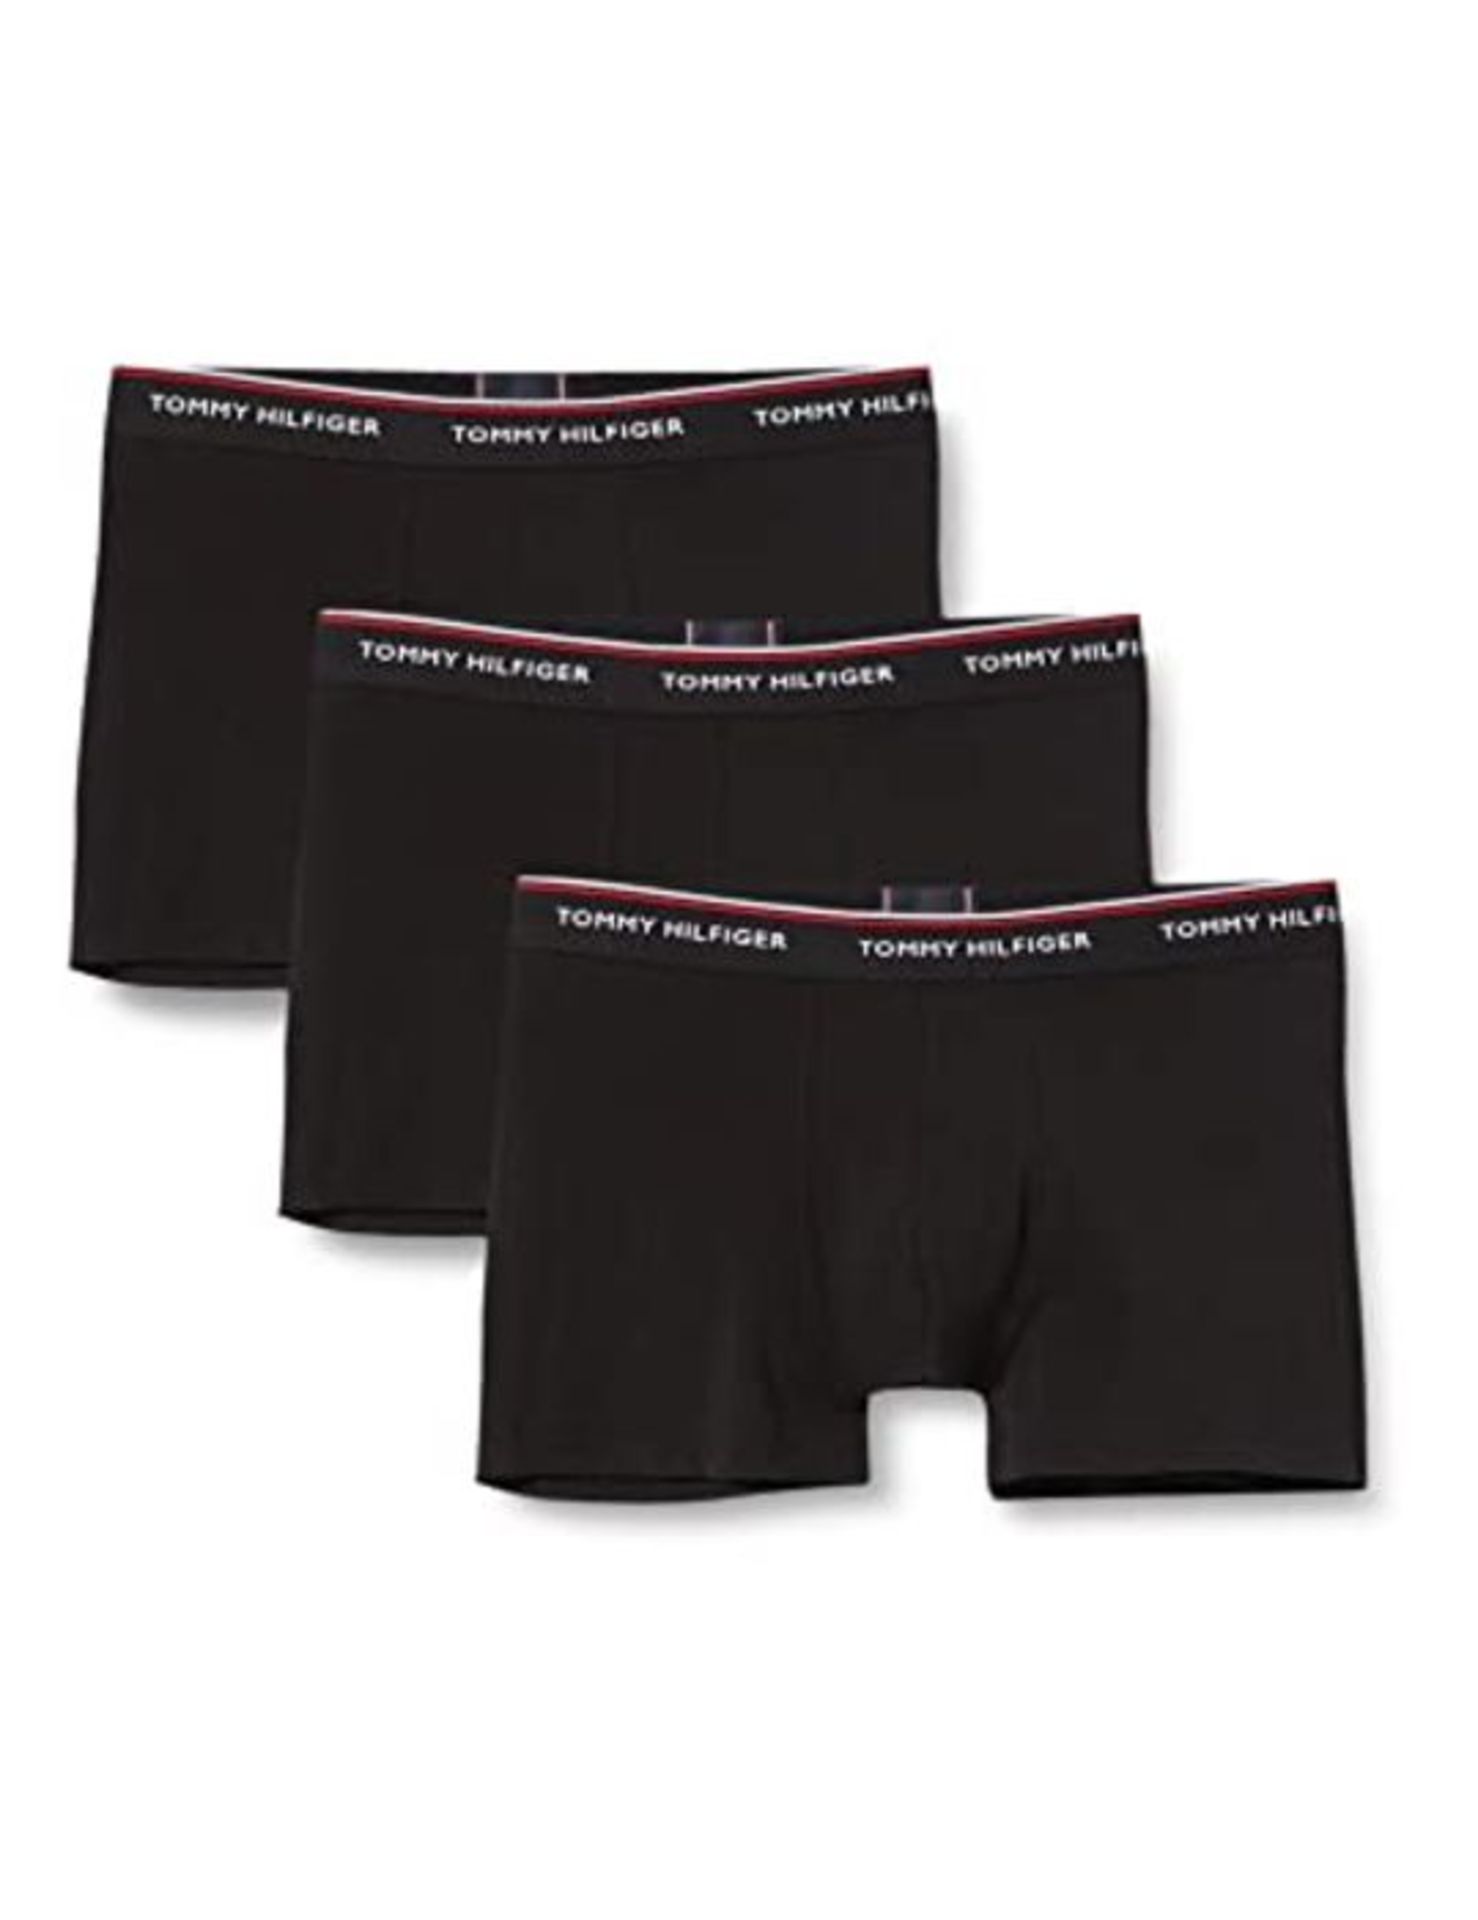 Tommy Hilfiger - Men's Boxer Shorts - Multipack Trunks For Men - 3 Pack Underwear Man